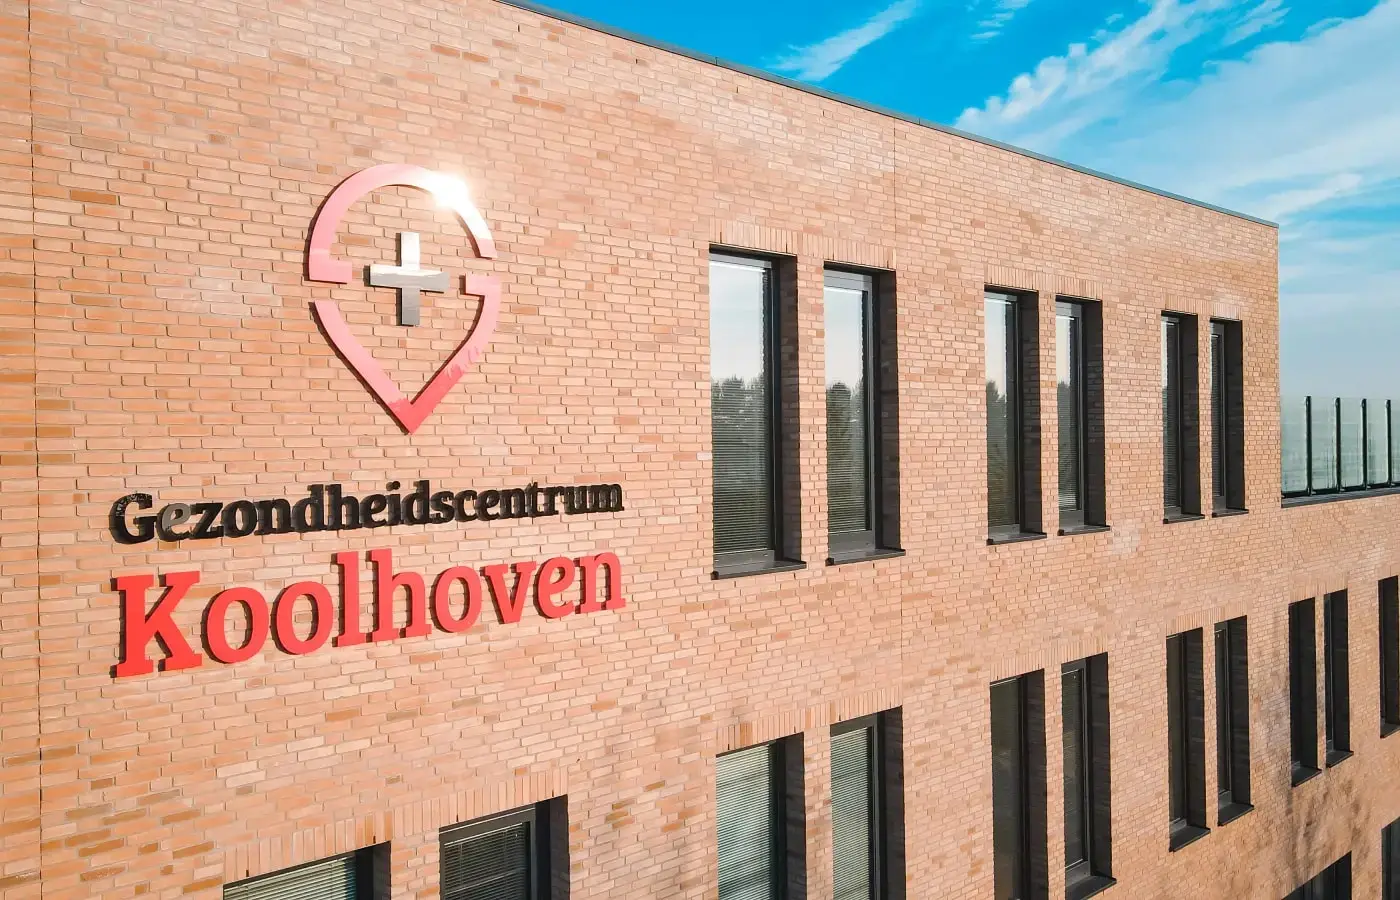 Gezondheidscentrum Koolhoven